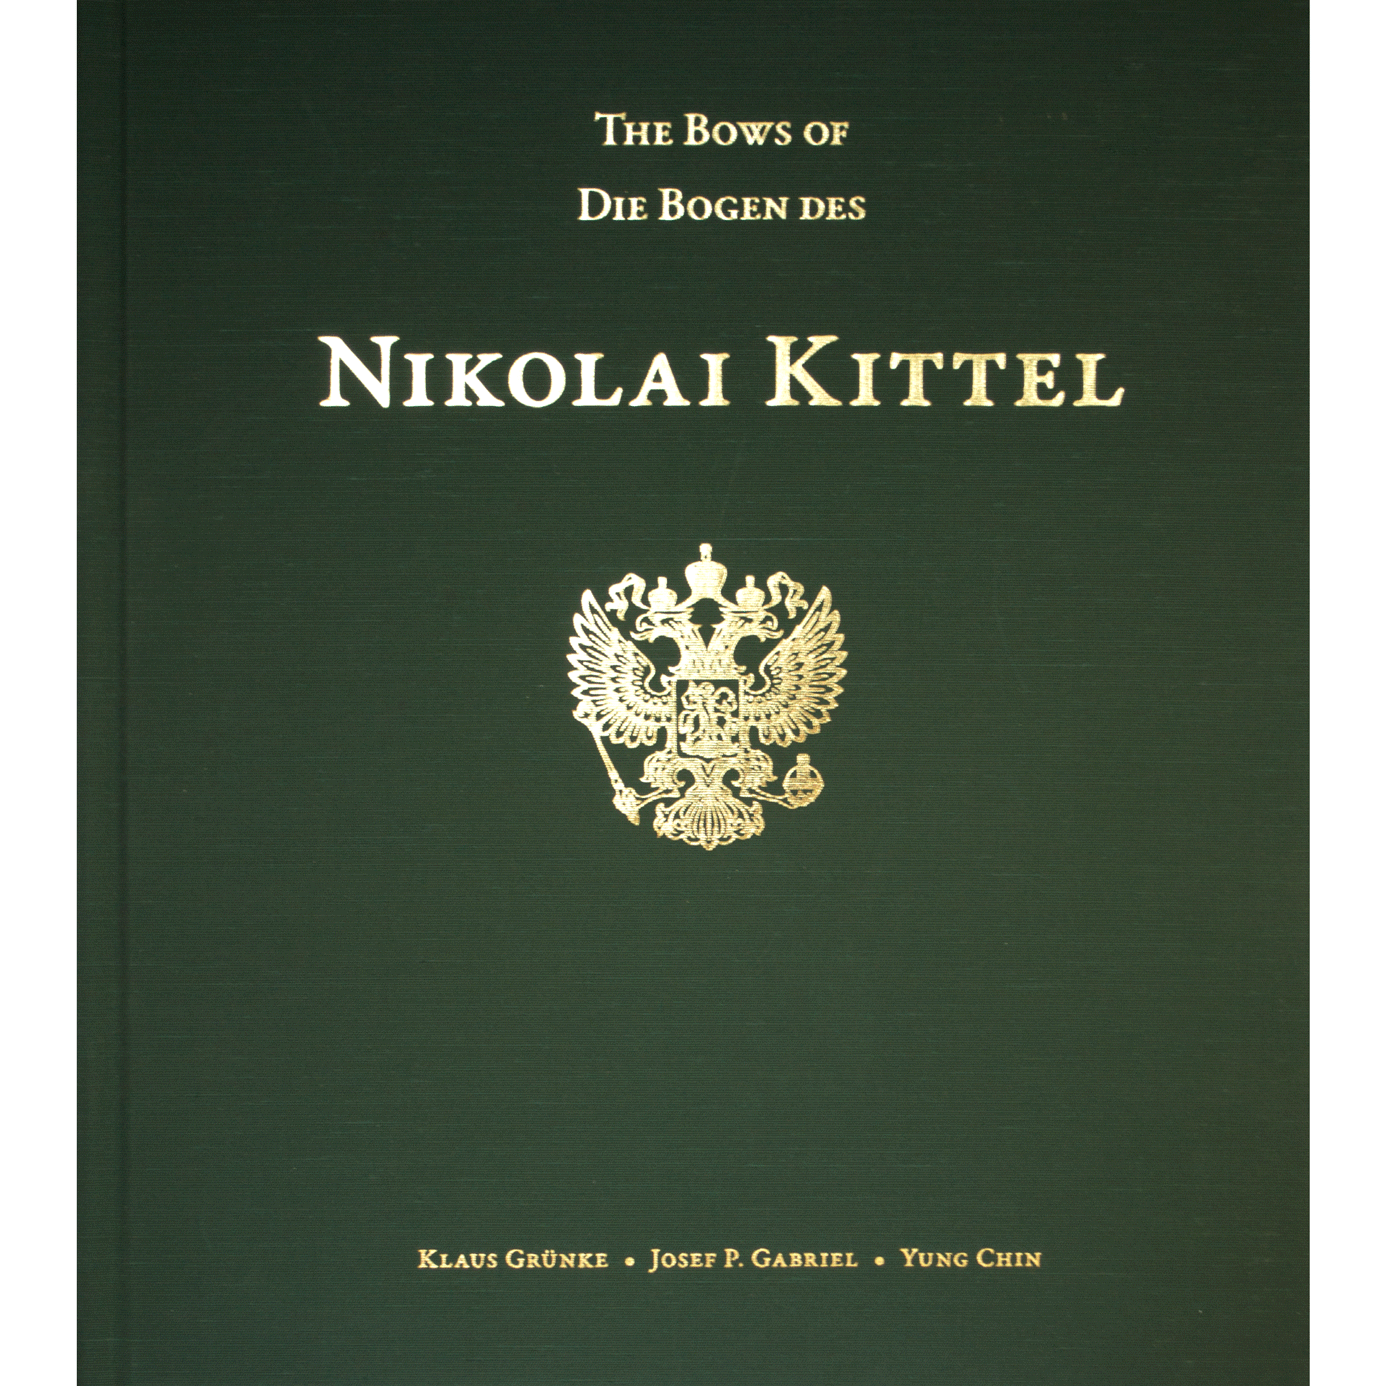 The bows of Nikolai Kittel